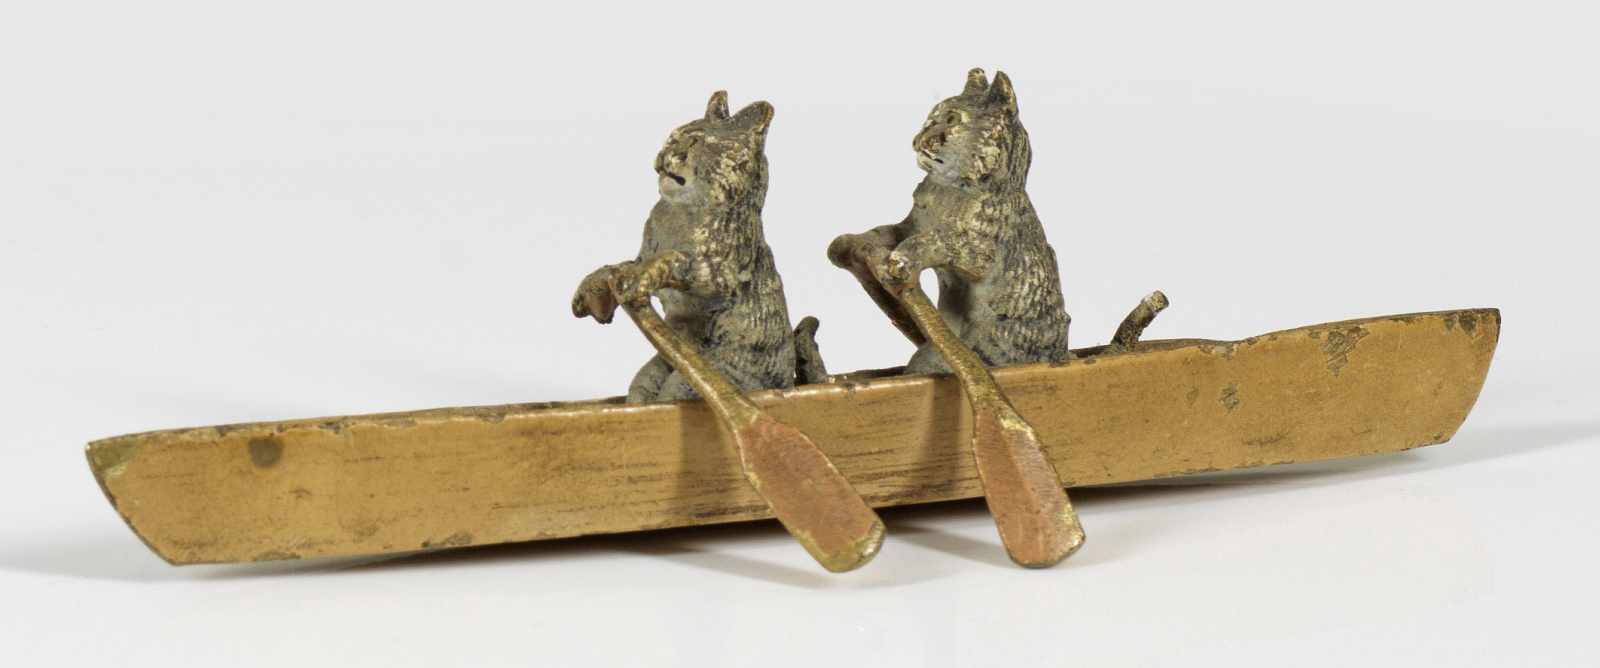 Figurenpaar mit zwei Katzen im RuderbootWiener Bronze, farbig bemalt. Ein Ruder besch.; L. 11,7 cm.A